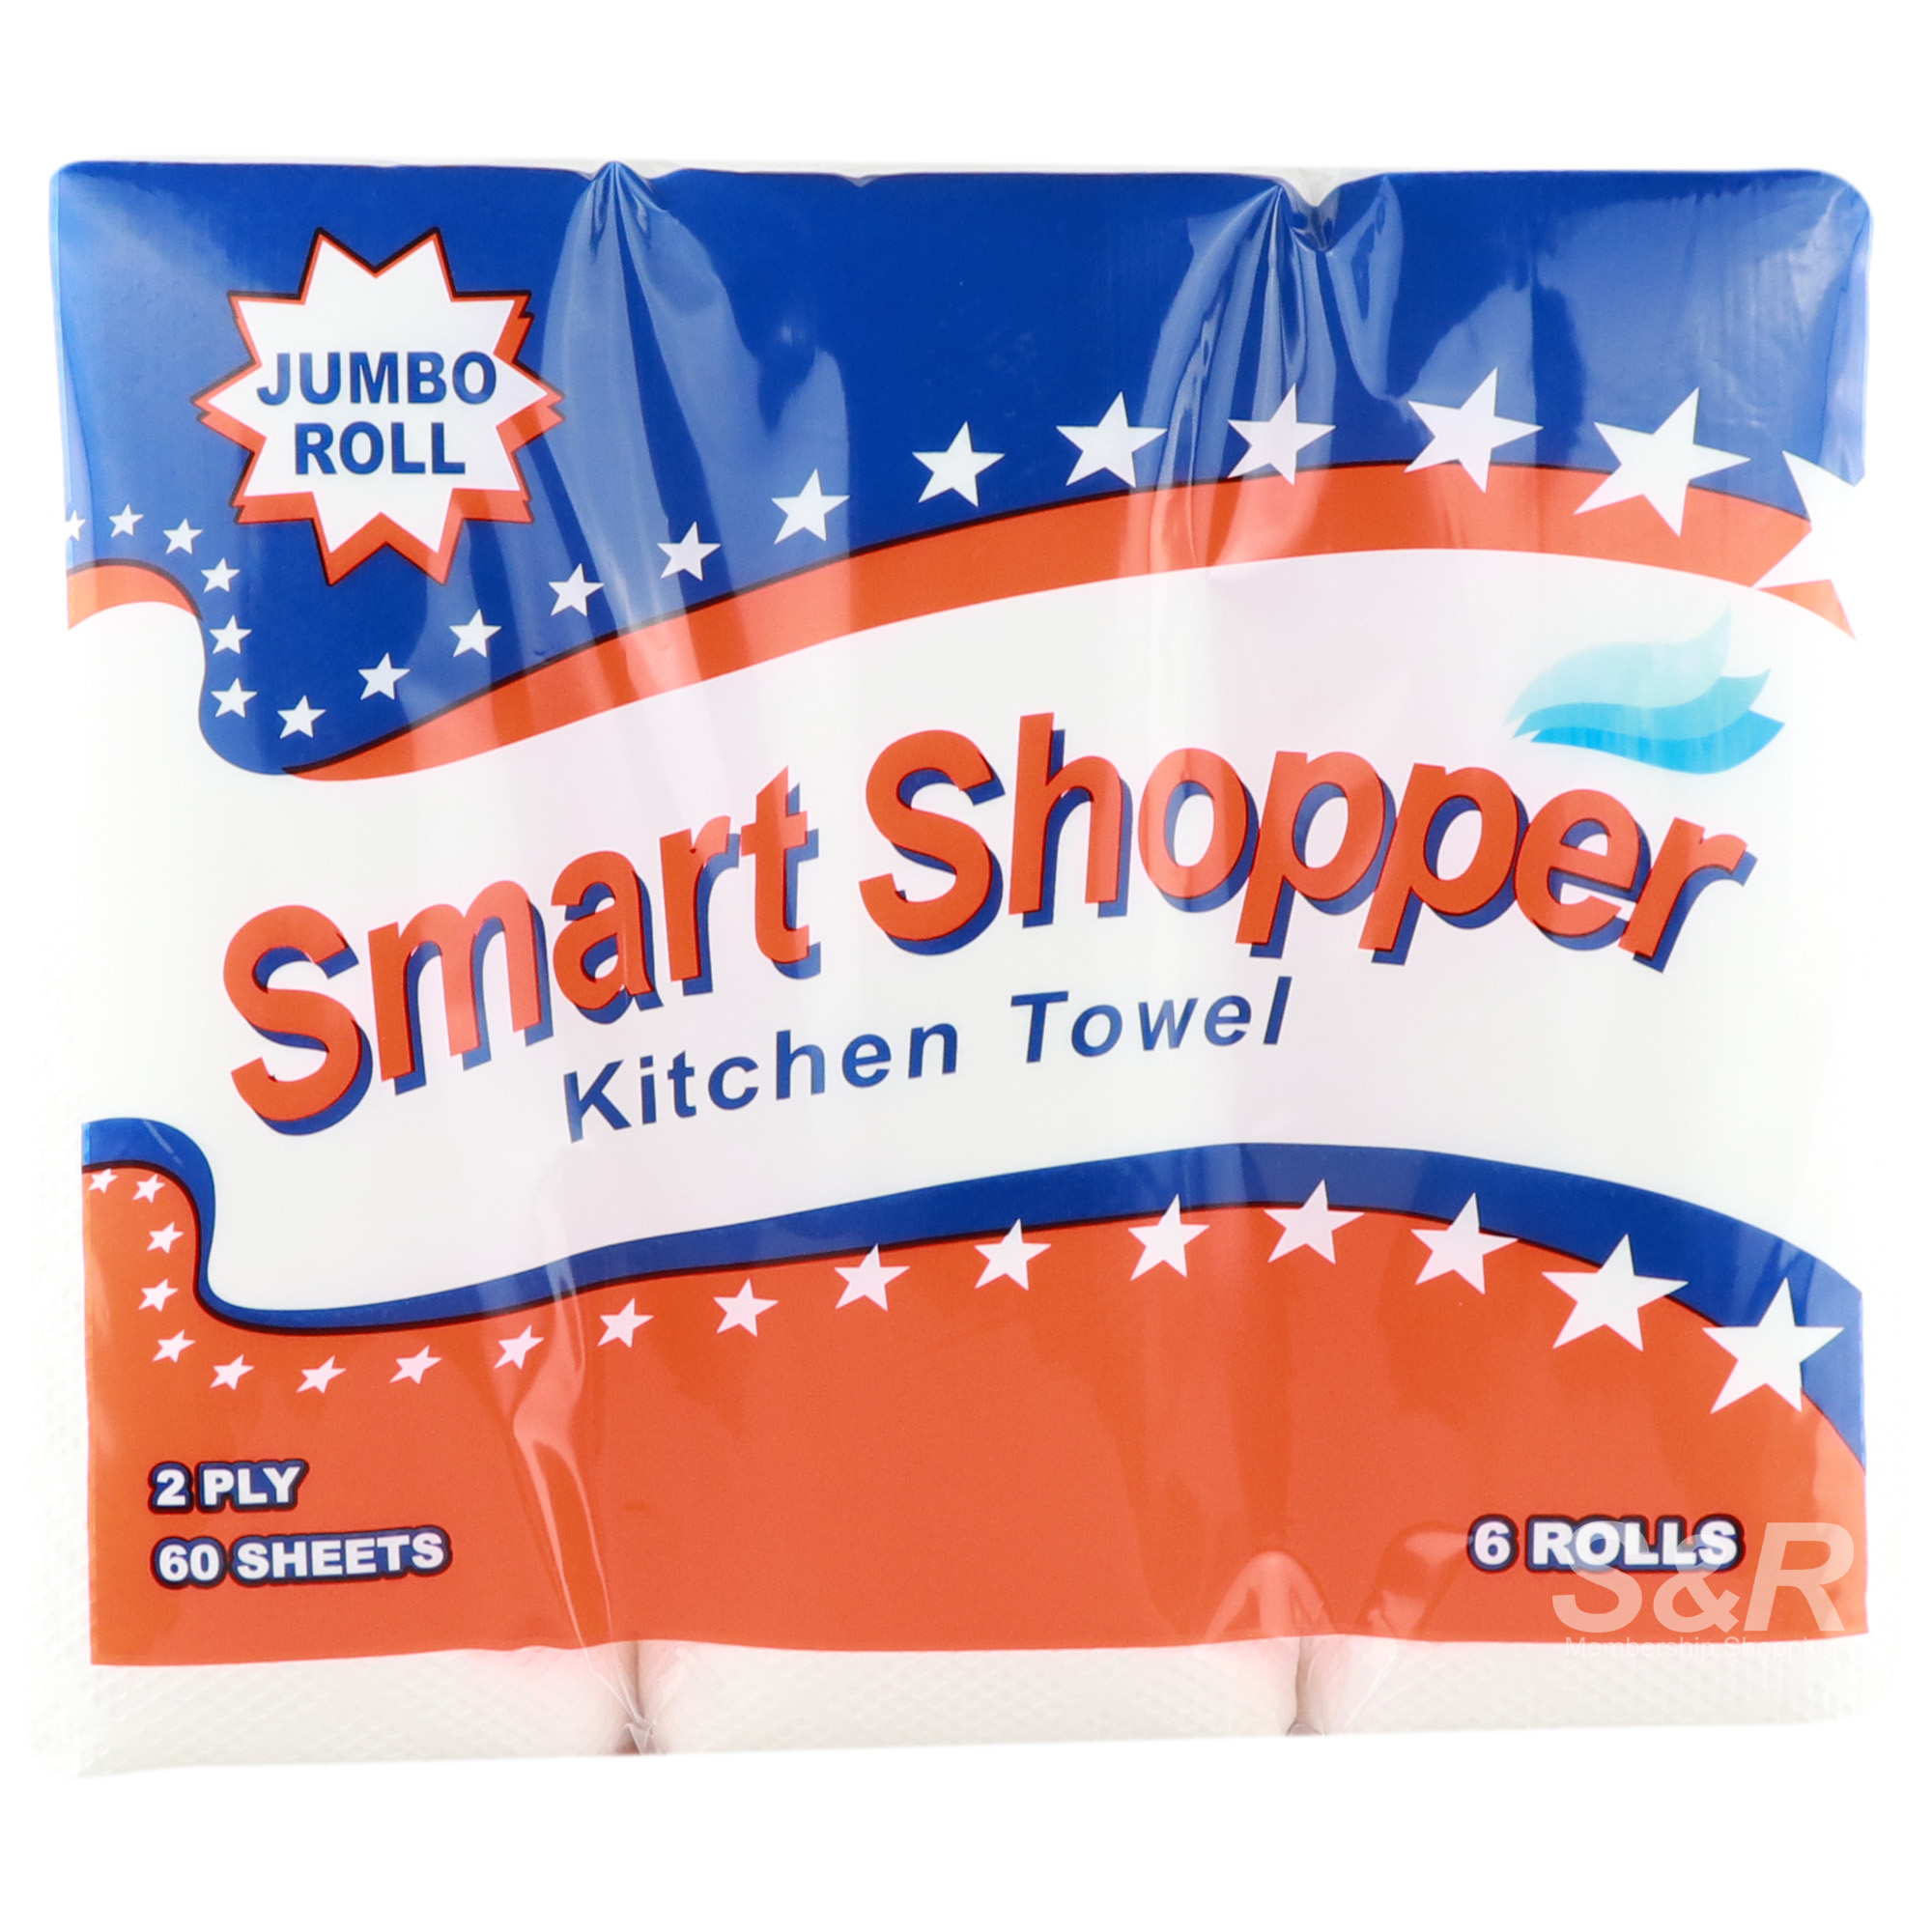 Smart Shopper 2-Ply Kitchen Towel 6 rolls